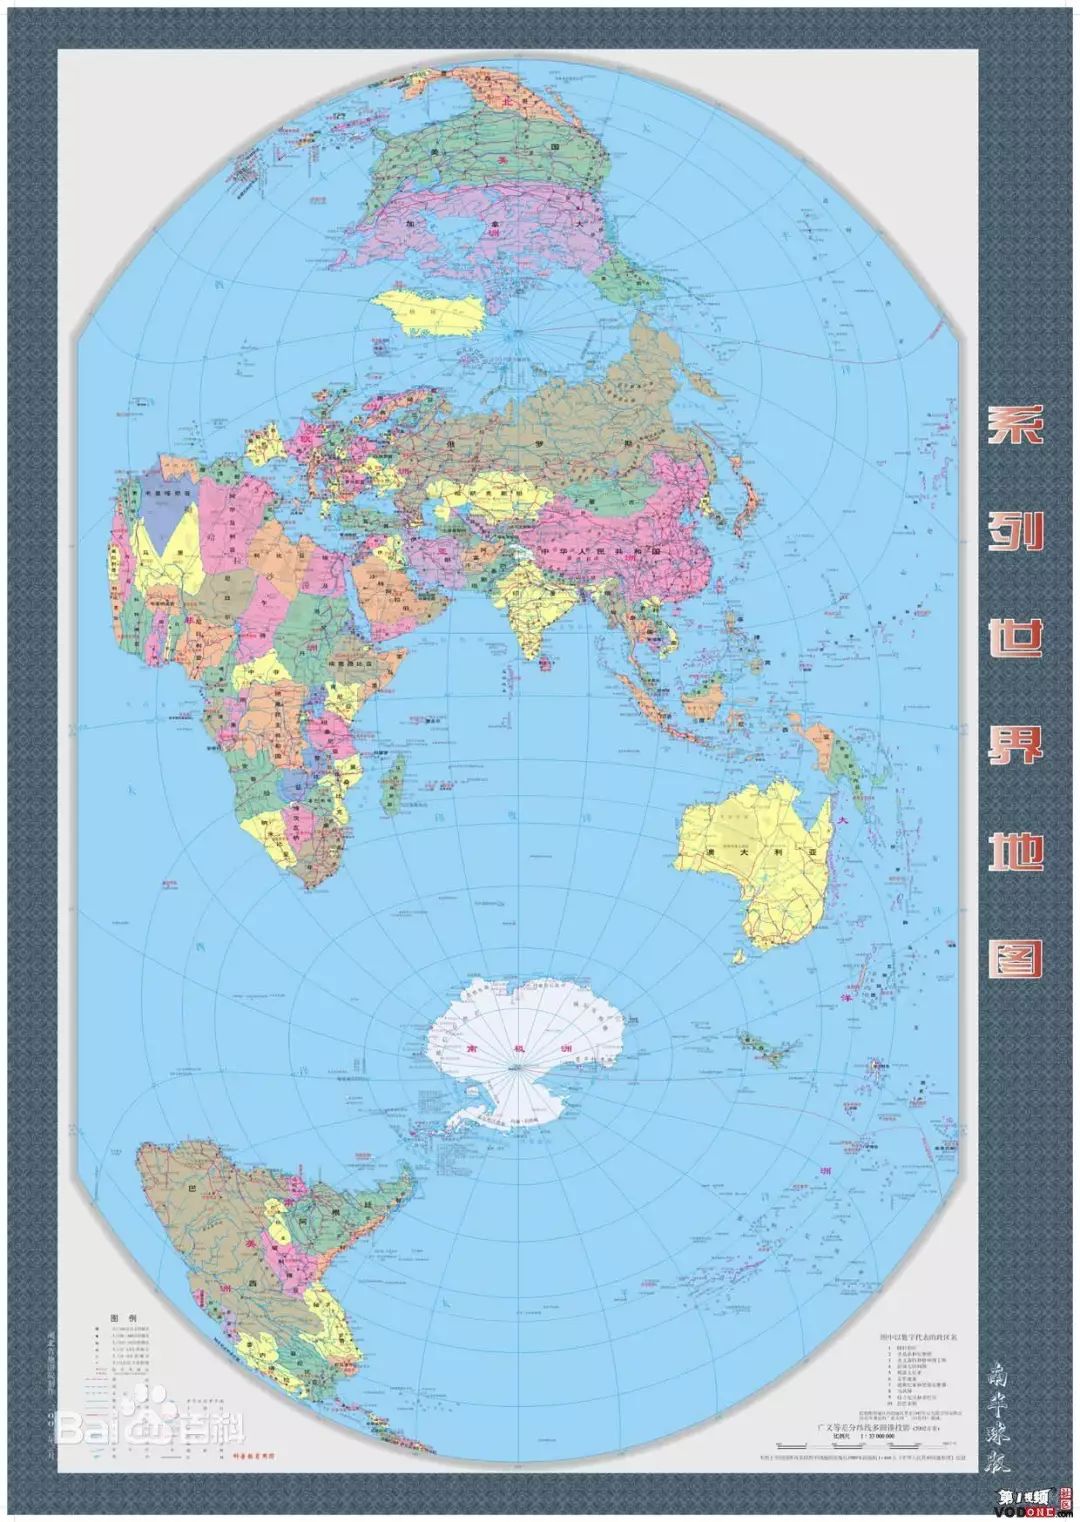 竖版世界地图是由中科院研究员赫晓光绘制